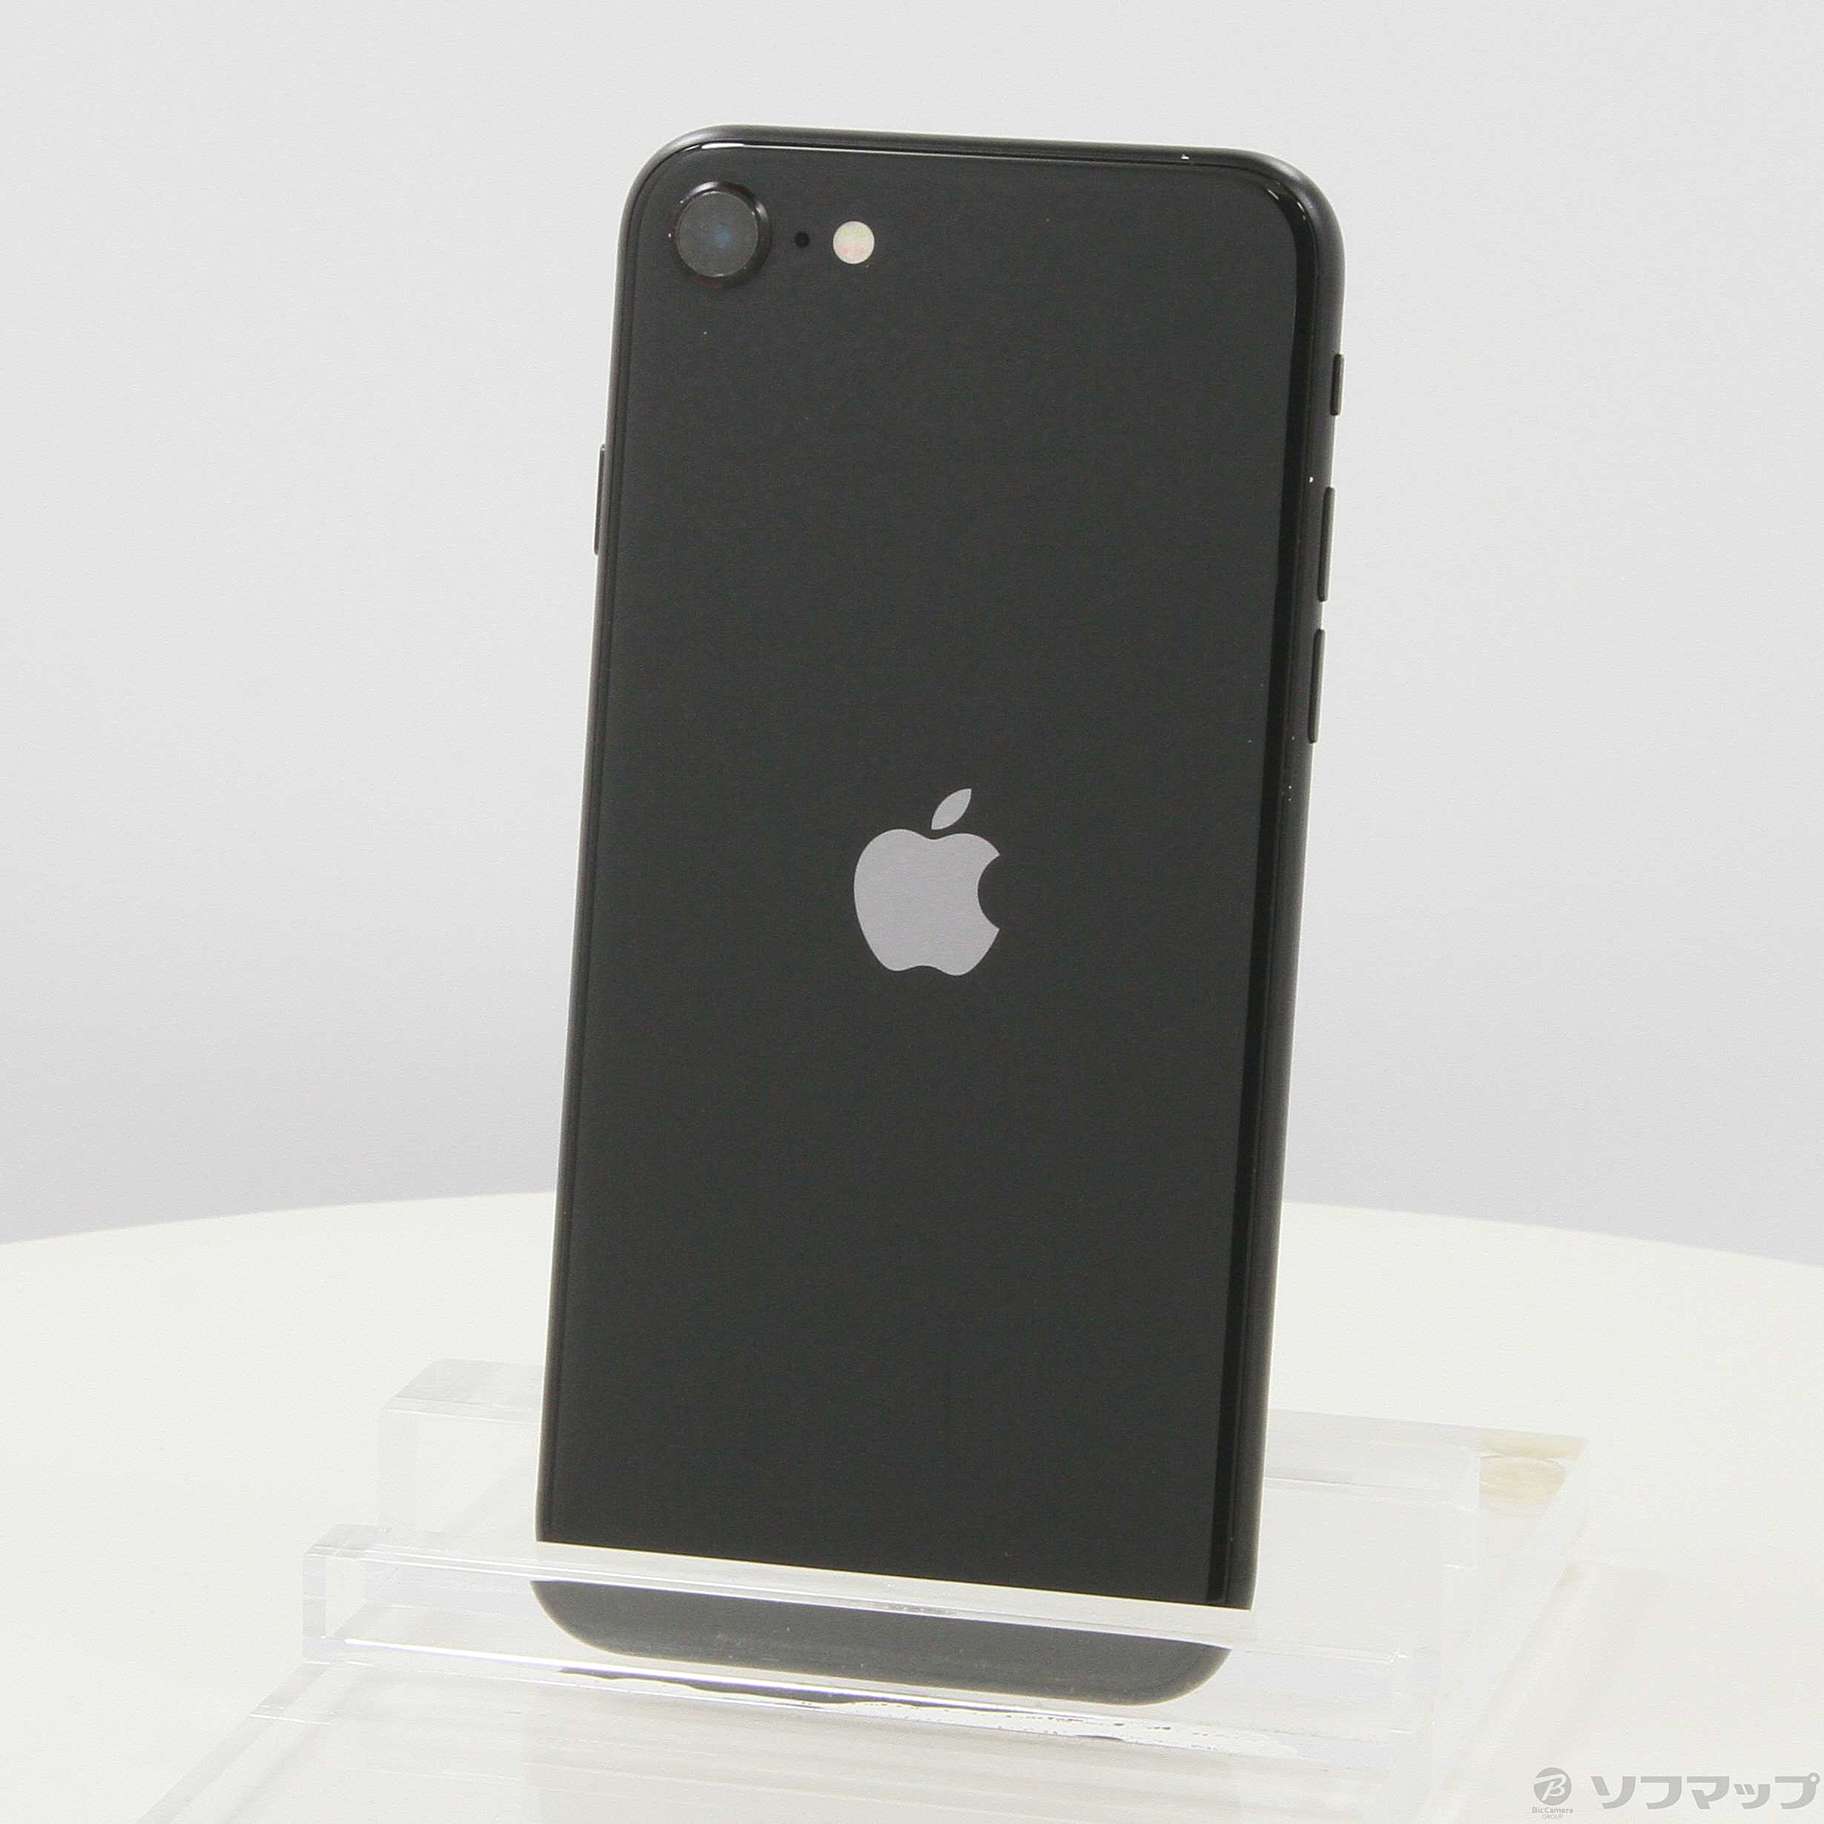 アップル iPhoneSE 第2世代 128GB ブラック simフリー版